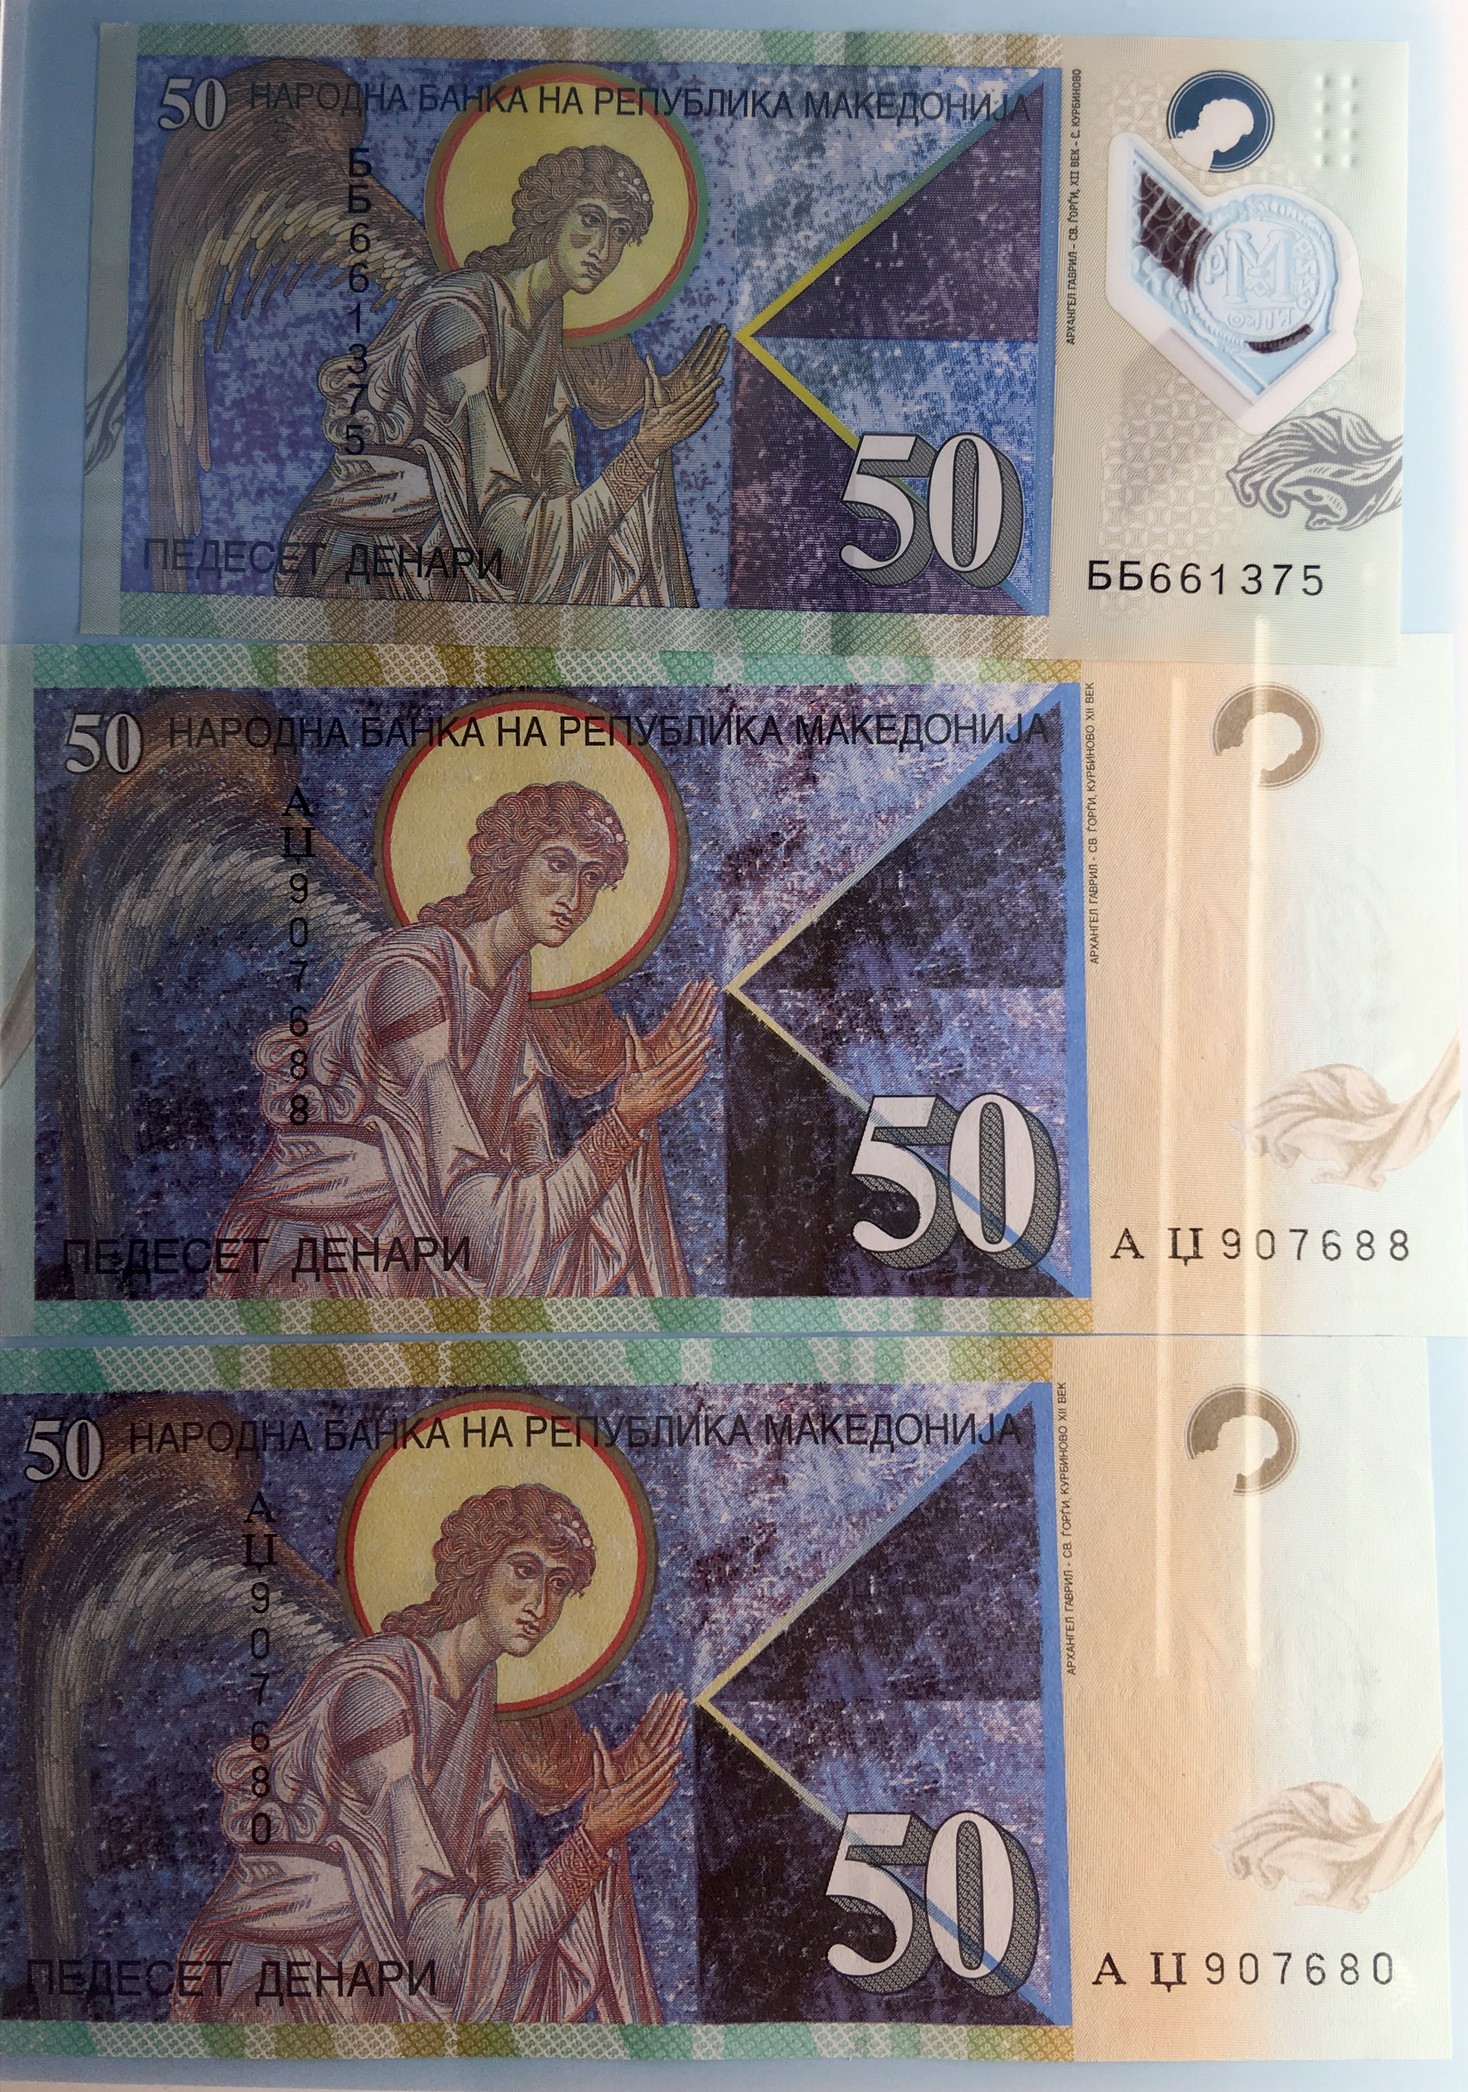 Денежная купюра достоинством 50 денаров изображён архангел Гавриил